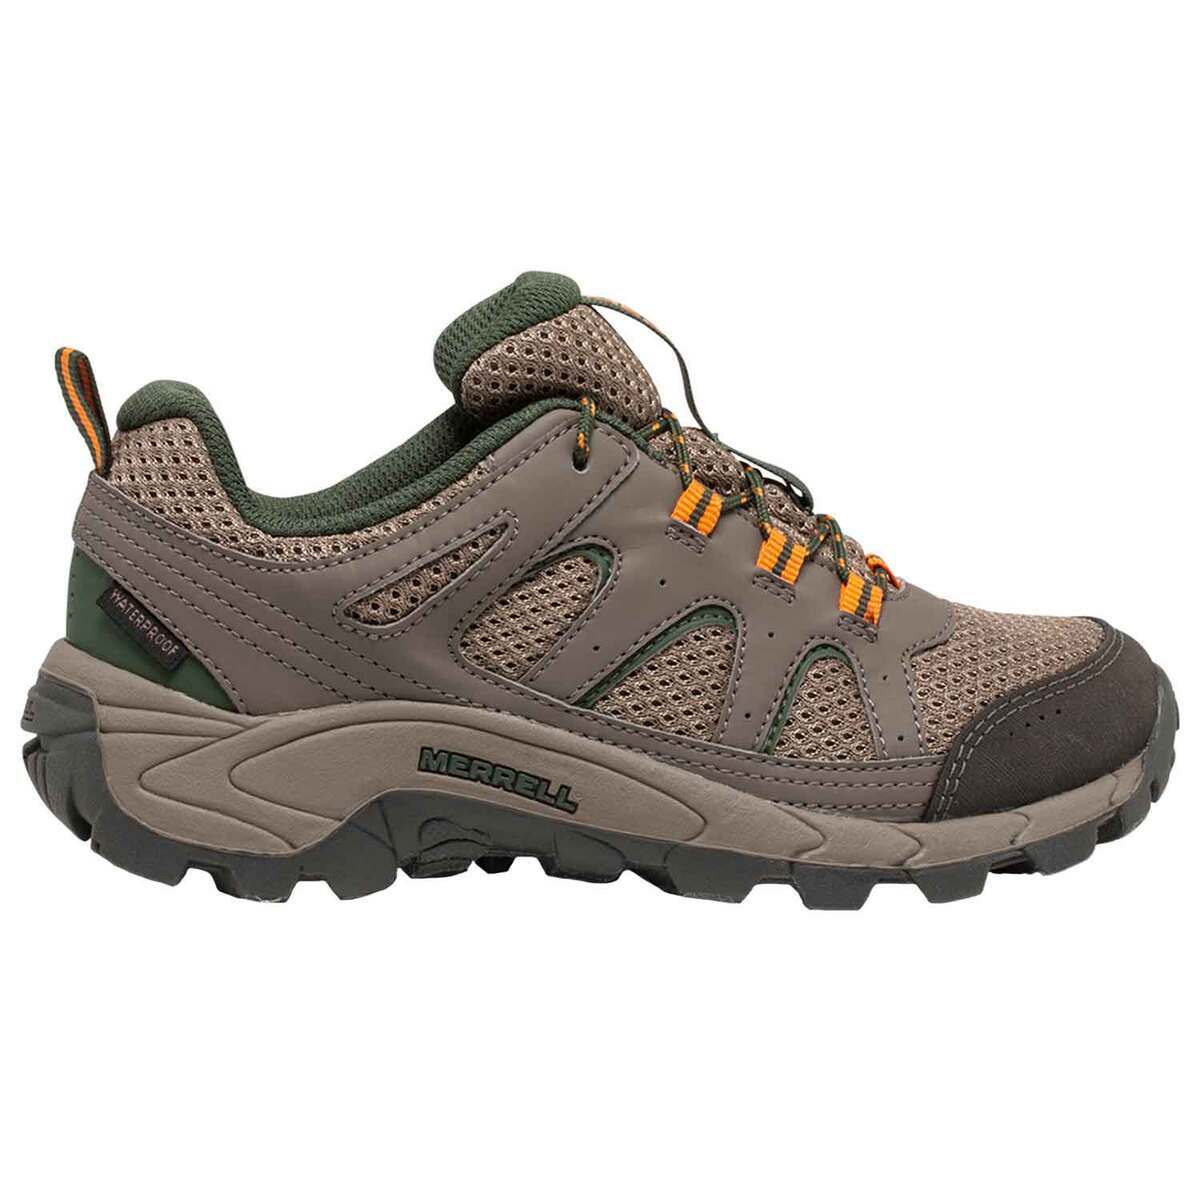 Merrell Youth Oakcreek Waterproof Low Hiking Shoes | Sportsman's Warehouse